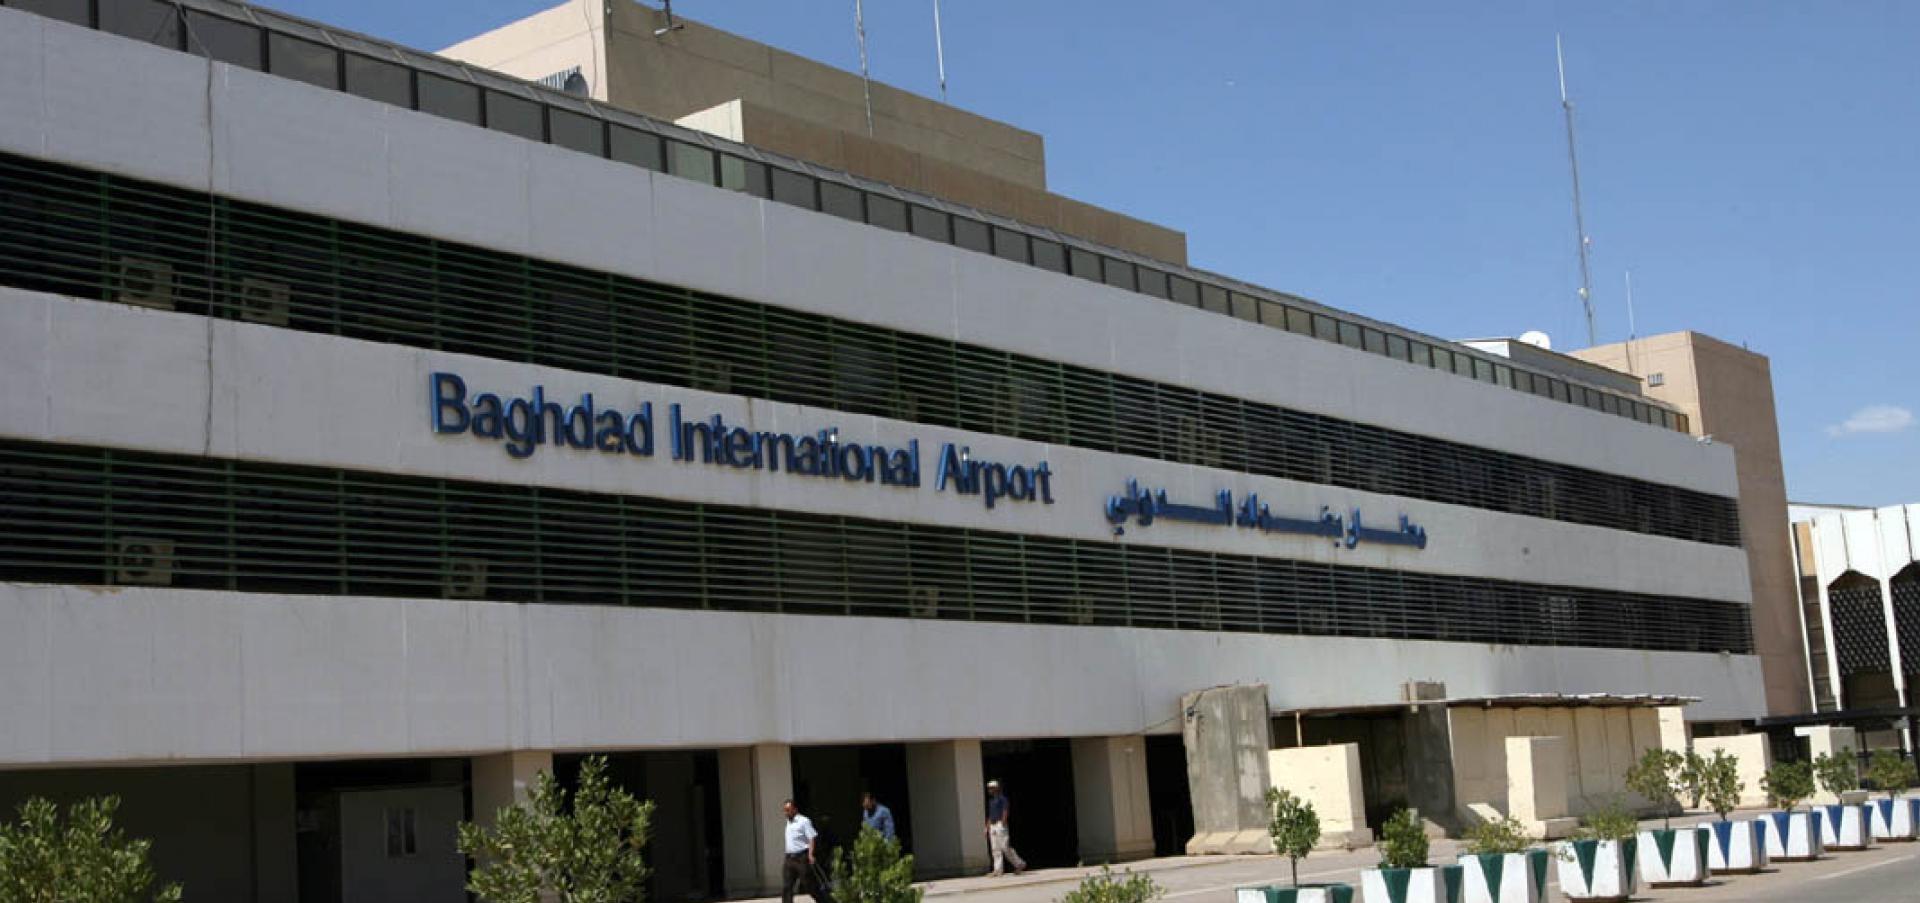 СМИ сообщили о падении ракеты вблизи аэропорта Багдада